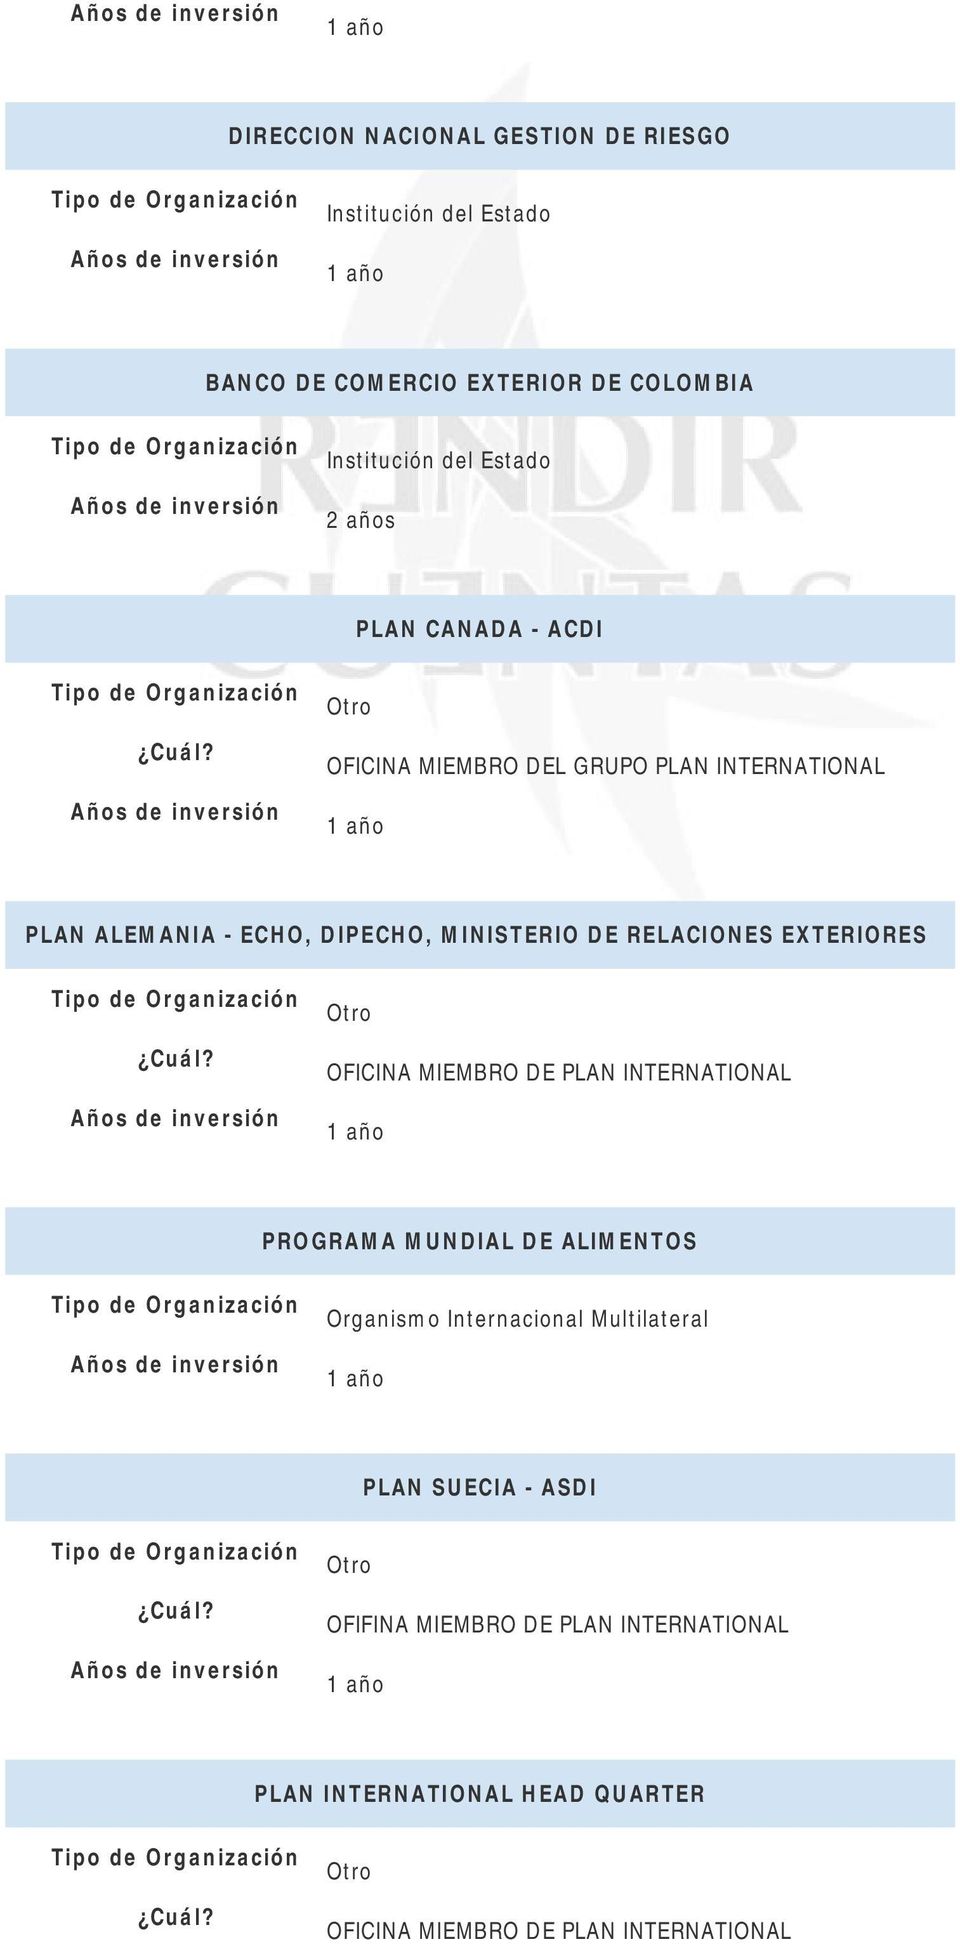 Años de inversión OFICINA MIEMBRO DEL GRUPO PLAN INTERNATIONAL PLAN ALEMANIA - ECHO, DIPECHO, MINISTERIO DE RELACIONES EXTERIORES Cuál?